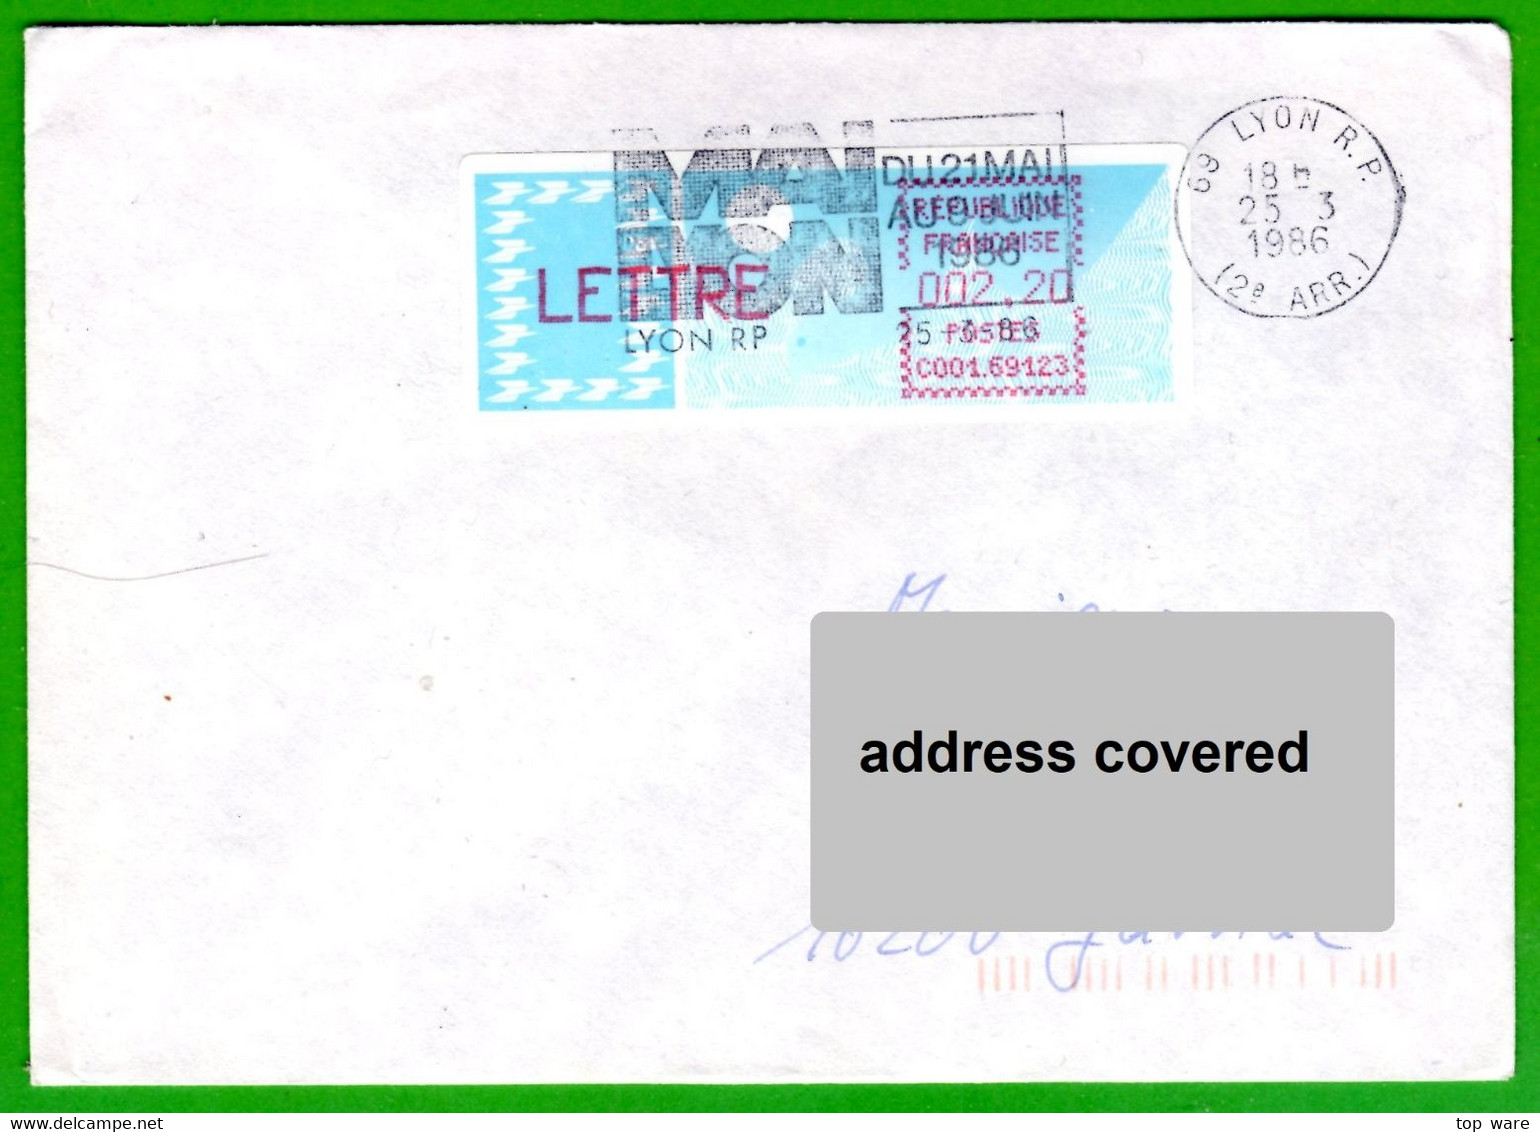 France LSA ATM Stamps C001.69123 / Michel 6.4 Zd / LETTRE 2,20 On Cover 25.3.86 Lyon RP / Distributeurs Automatenmarken - 1985 « Carrier » Paper